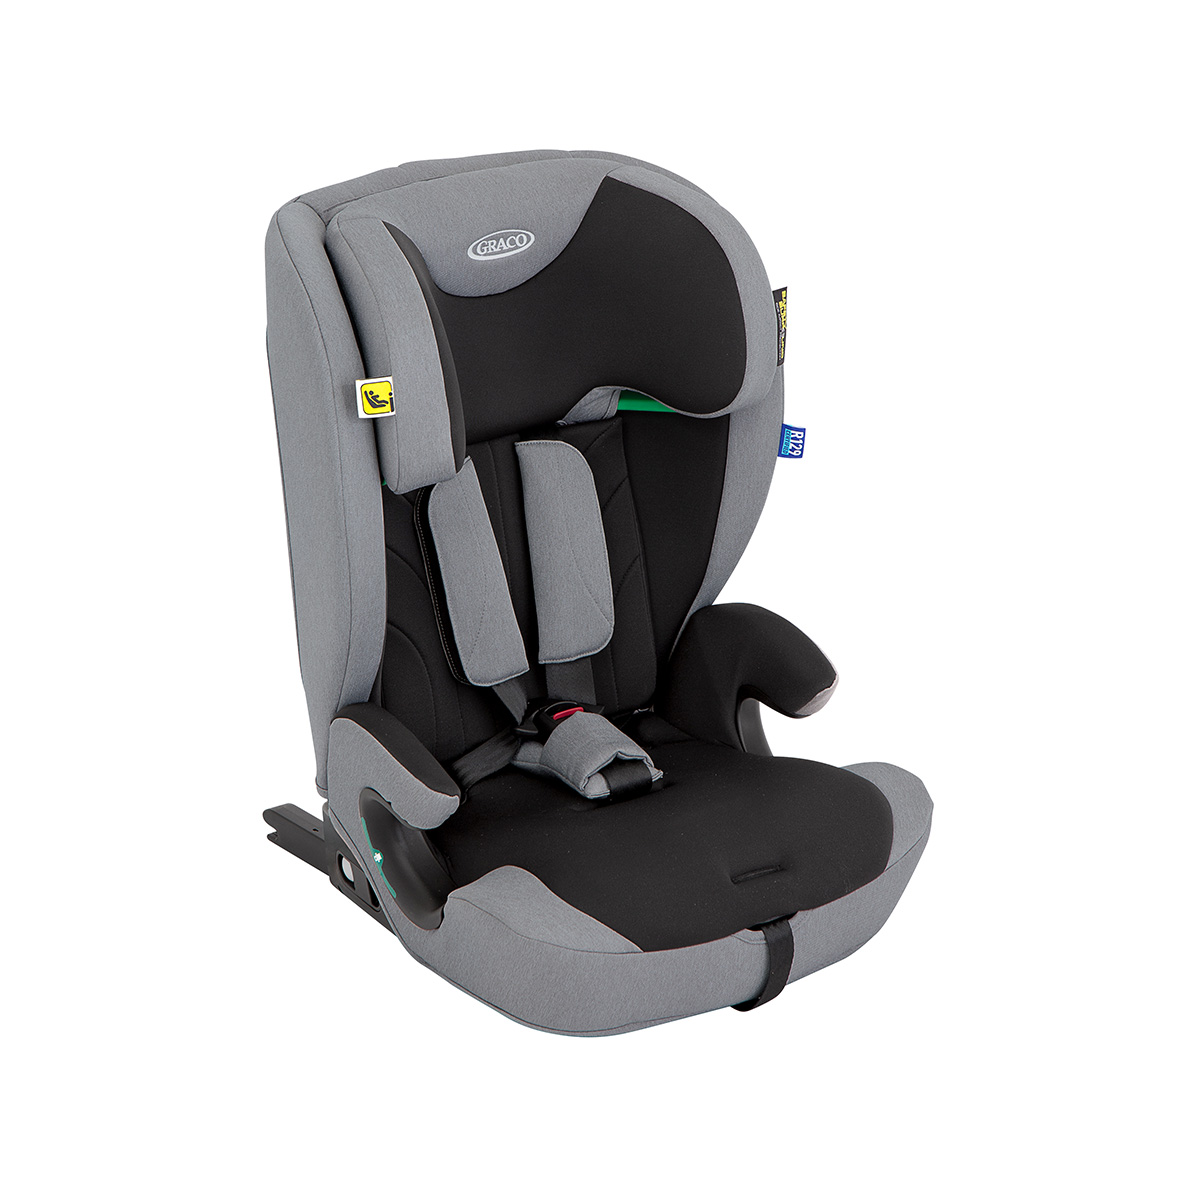 Rehausseur de siège auto à harnais 2-en-1 Graco Energi™ i-Size R129 avec ISOFOX et attache supérieure en mode rehausseur à harnais vu en angle de trois quarts.